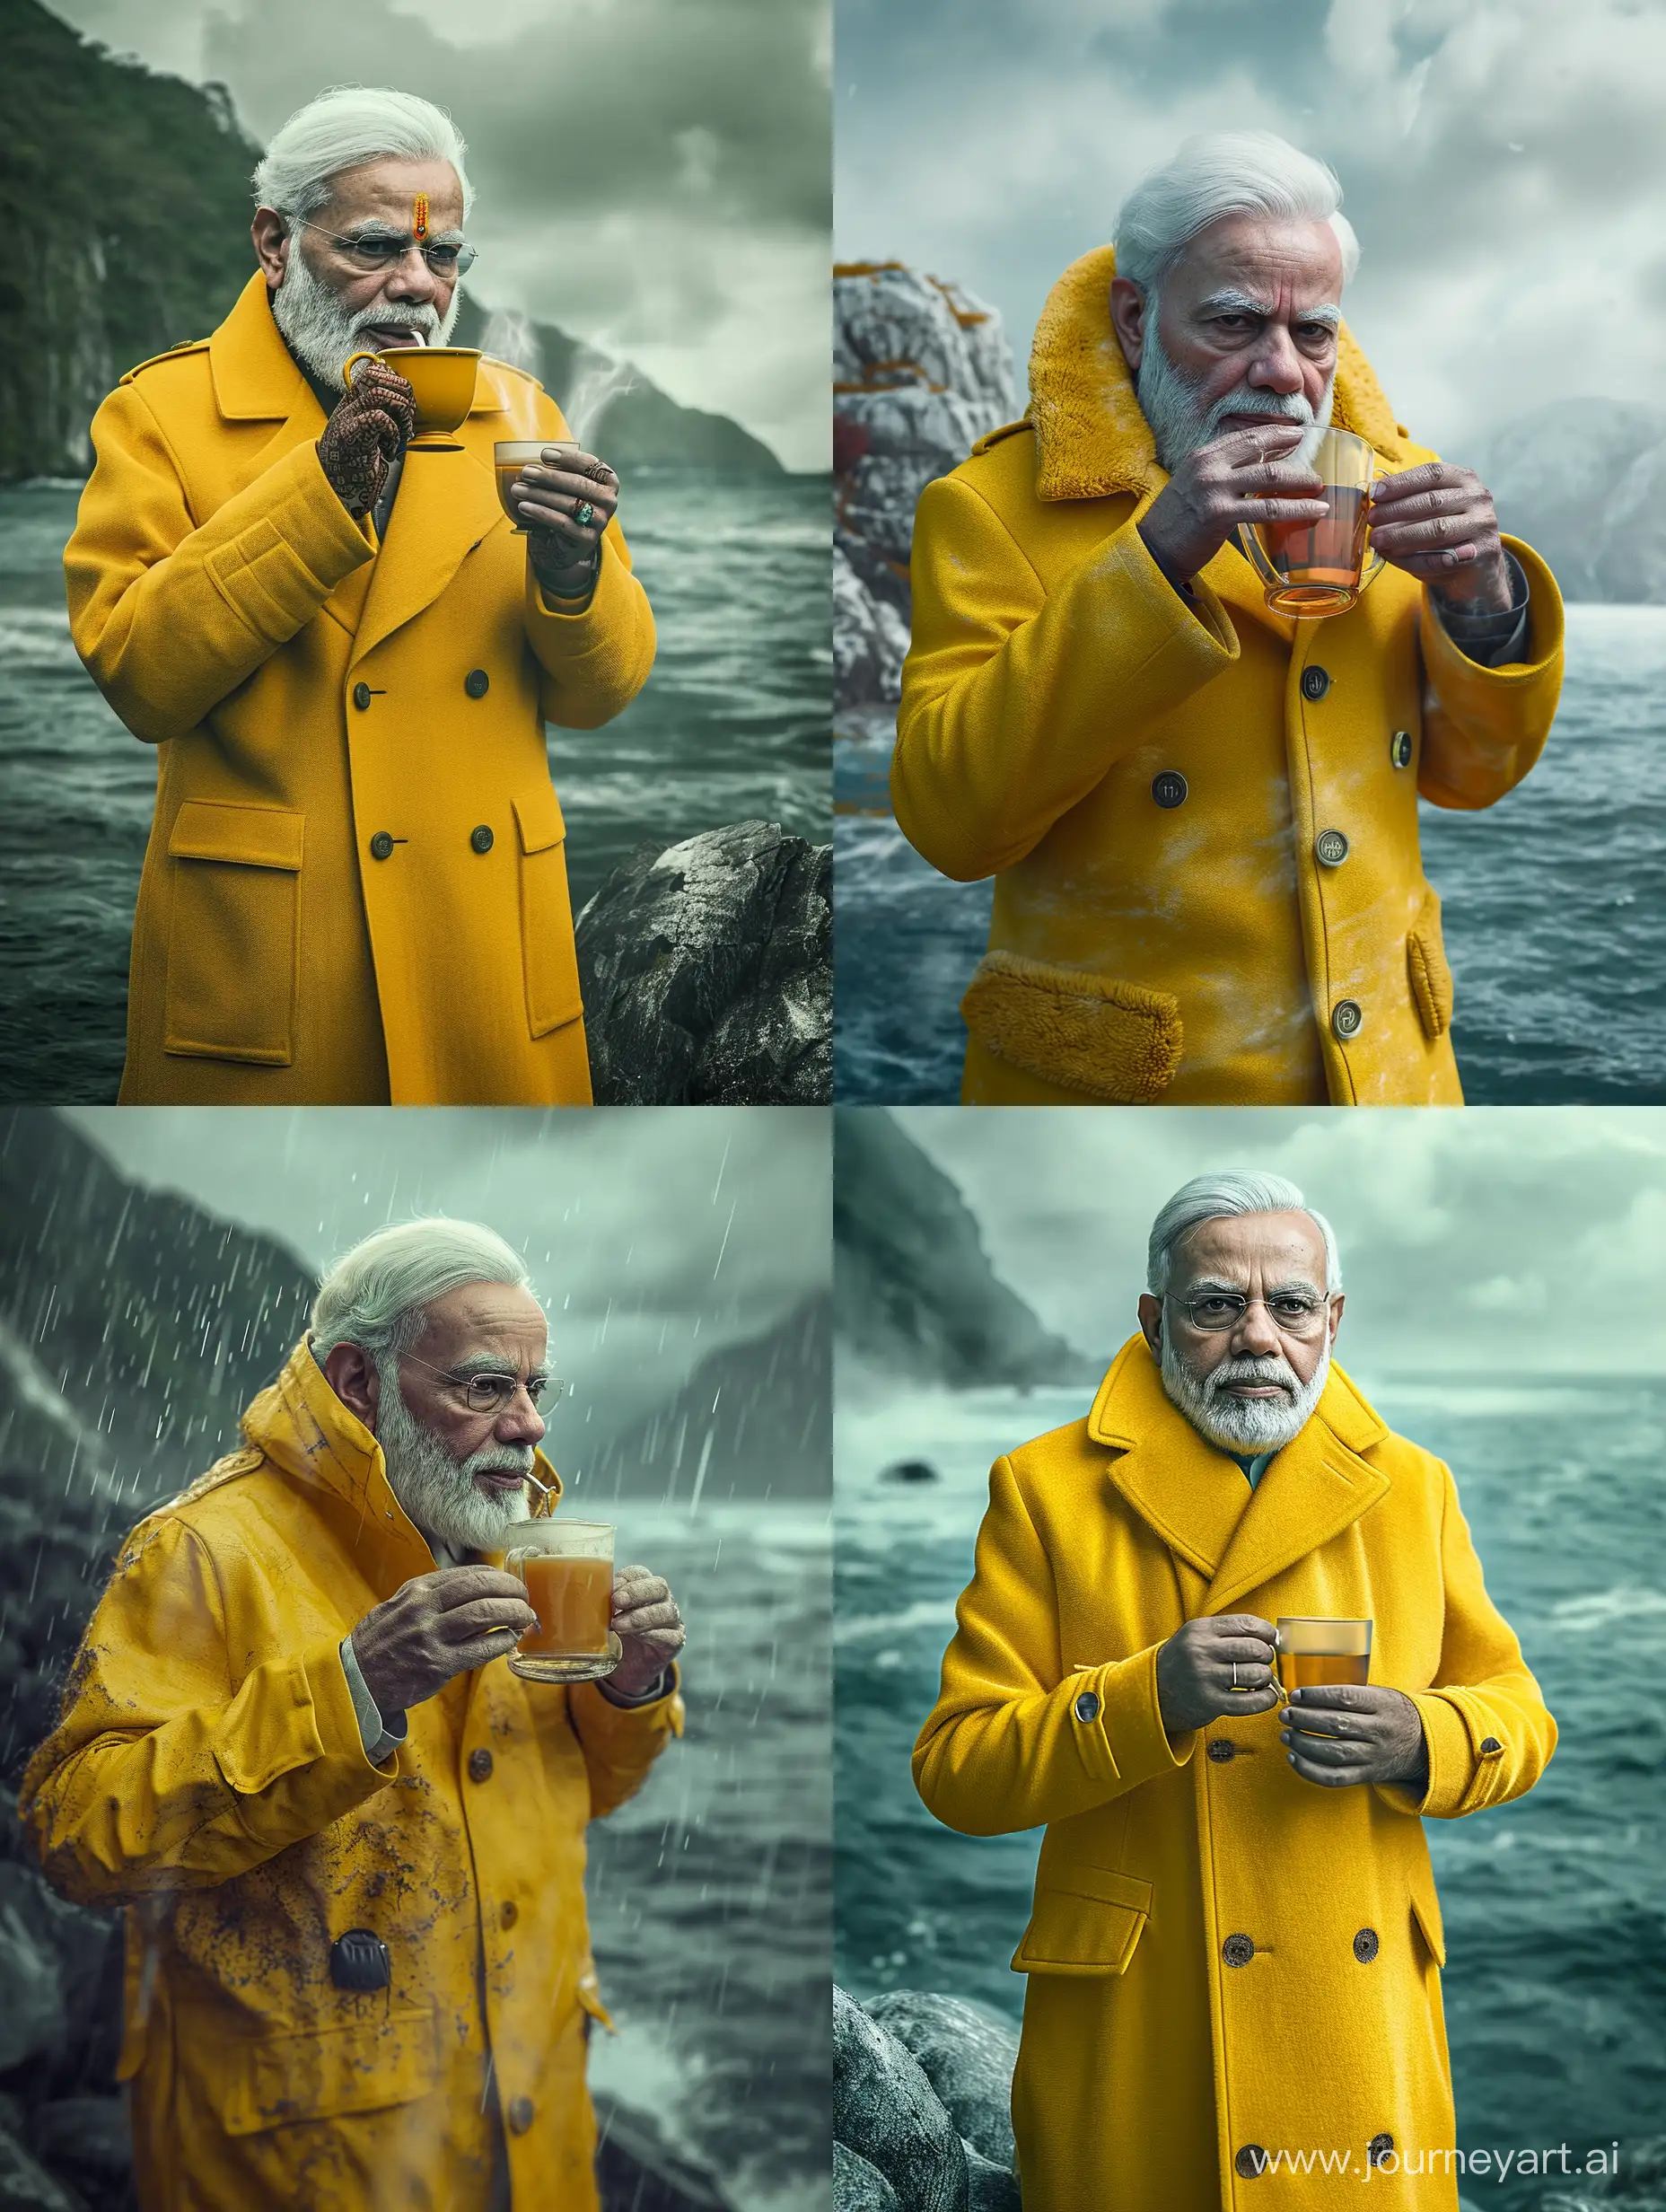 Narendra-Modi-Enjoying-Tea-in-Stylish-Yellow-Outfit-on-an-Island